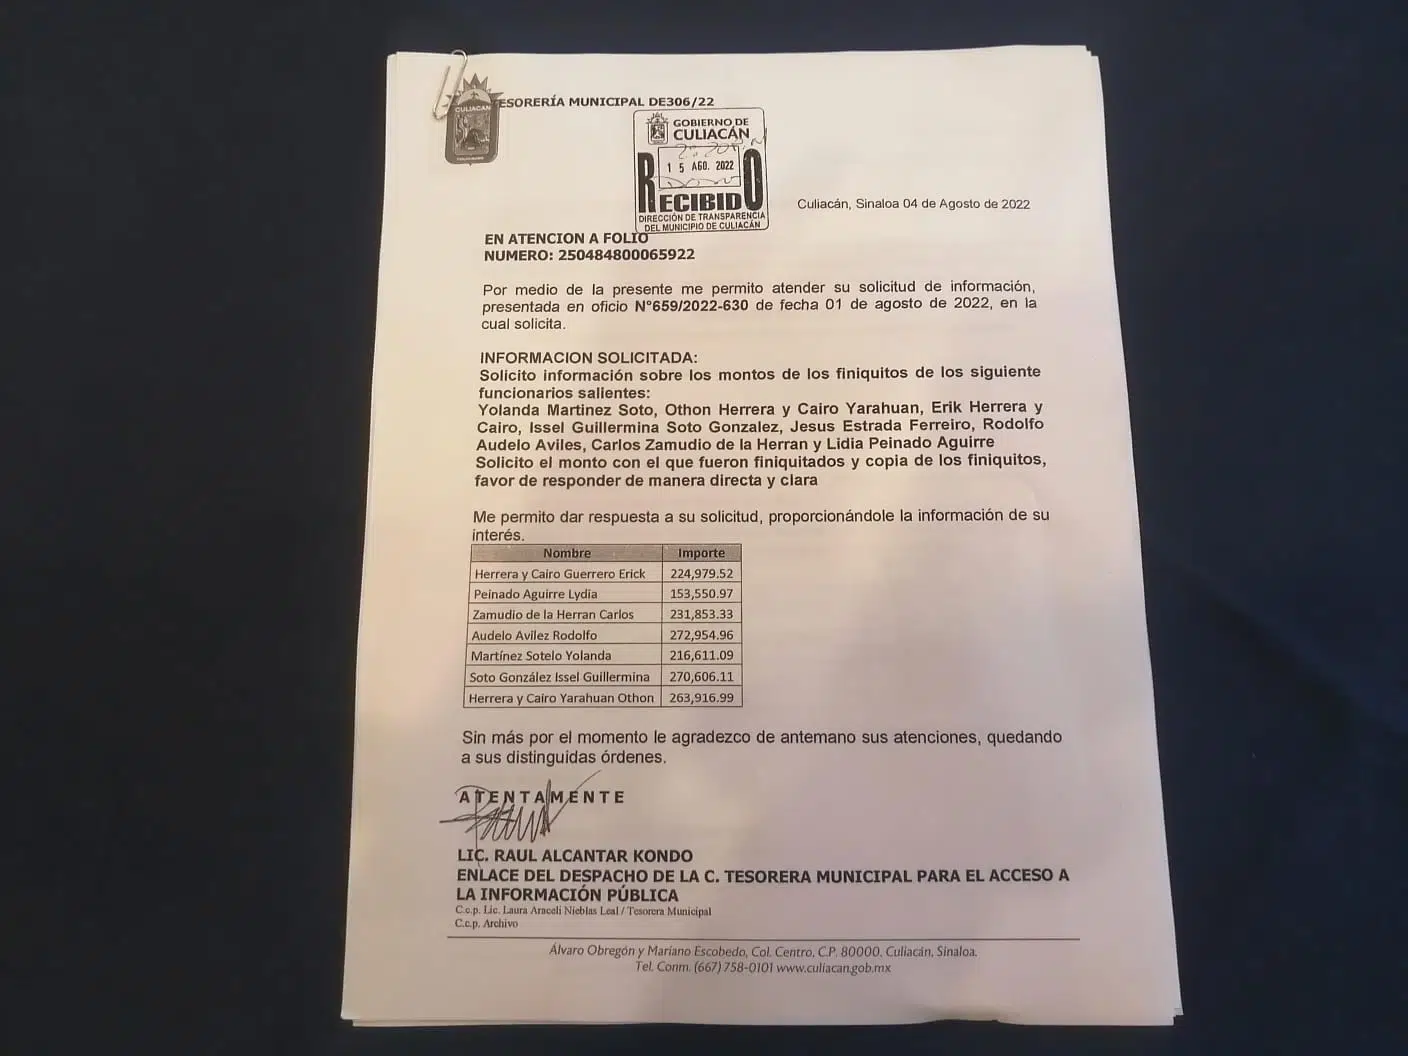 “Se llevaron hasta 300 mil pesos”: Acusan a exfuncionarios de Estrada de liquidaciones ilegales